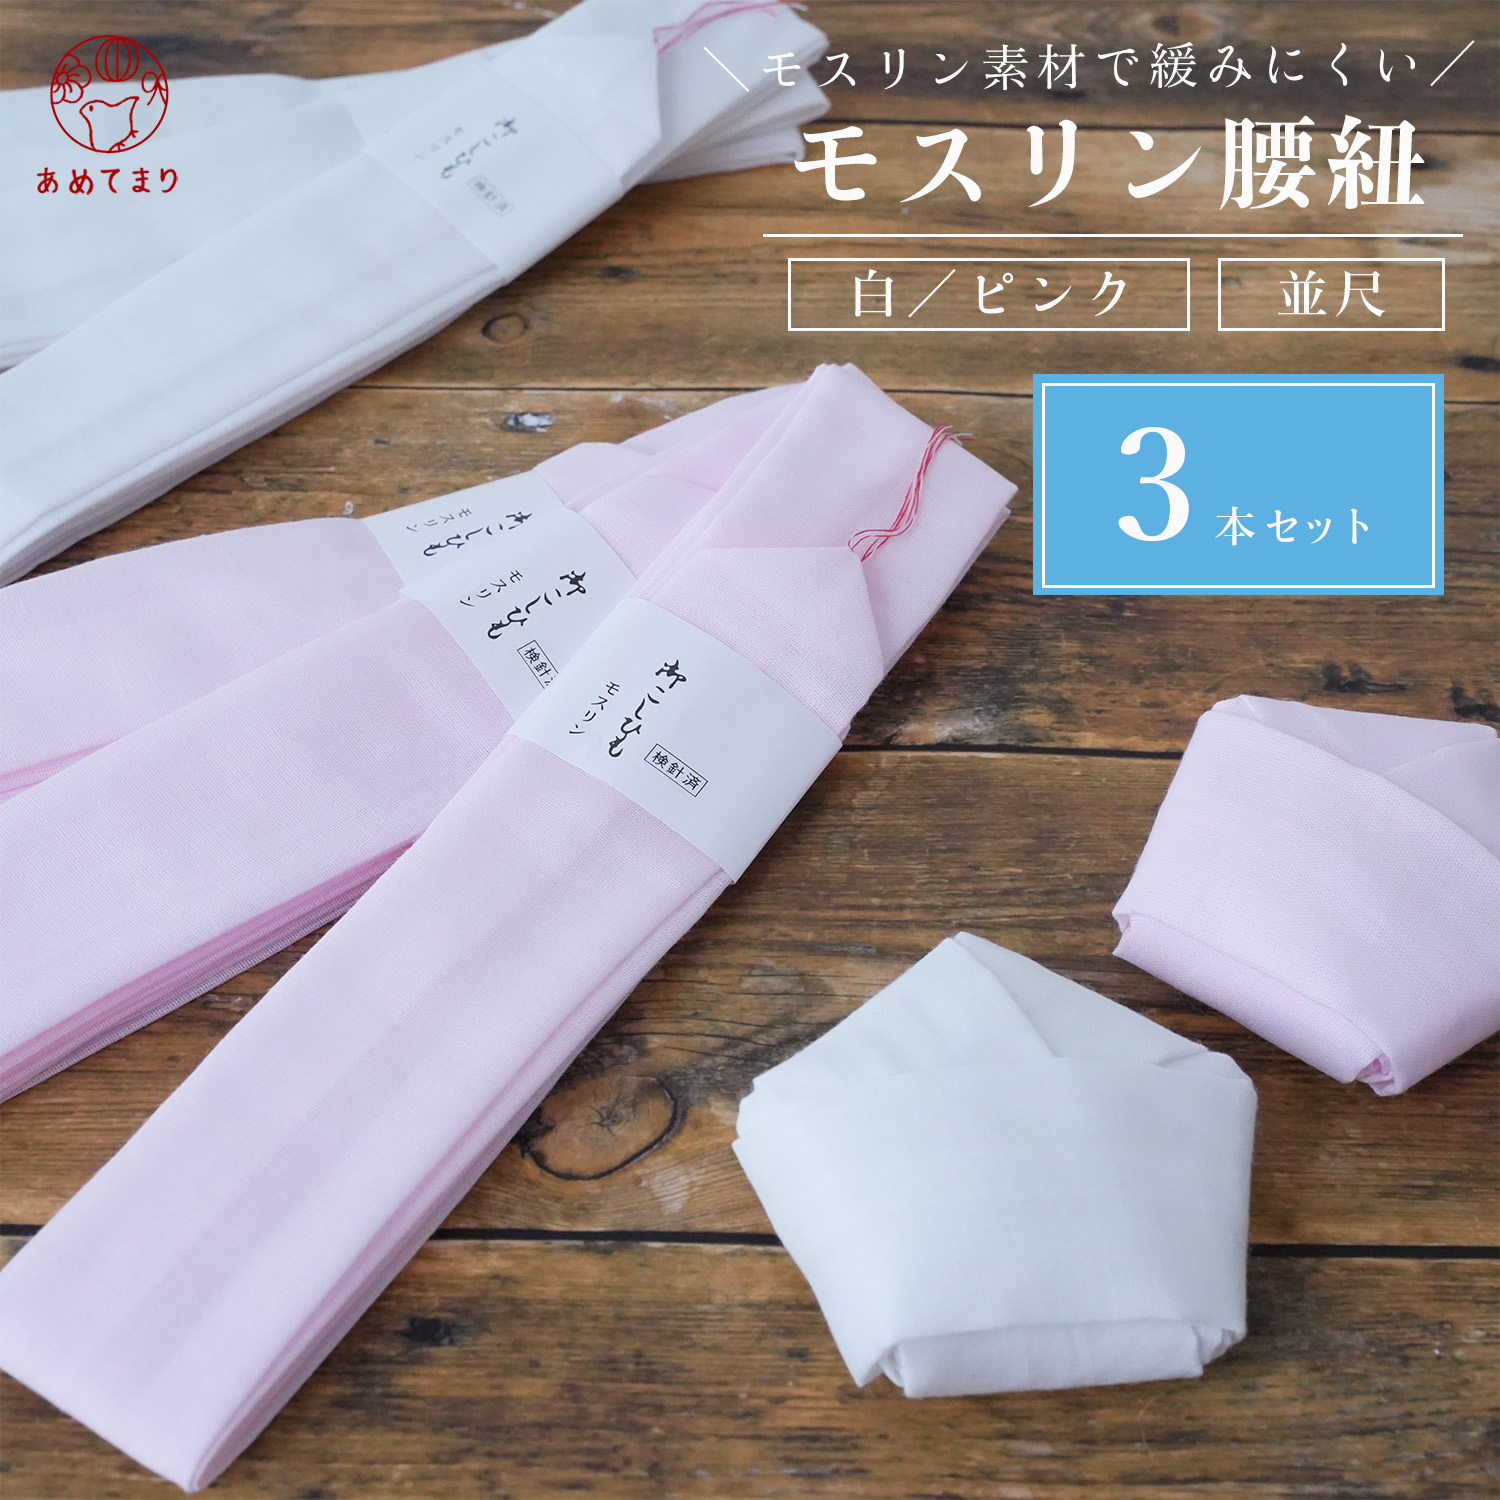 お金を節約 腰紐 着物 日本製 腰ひも モスリン 並幅 並尺 3本セット 無地 ピンク系 メール便選択可能